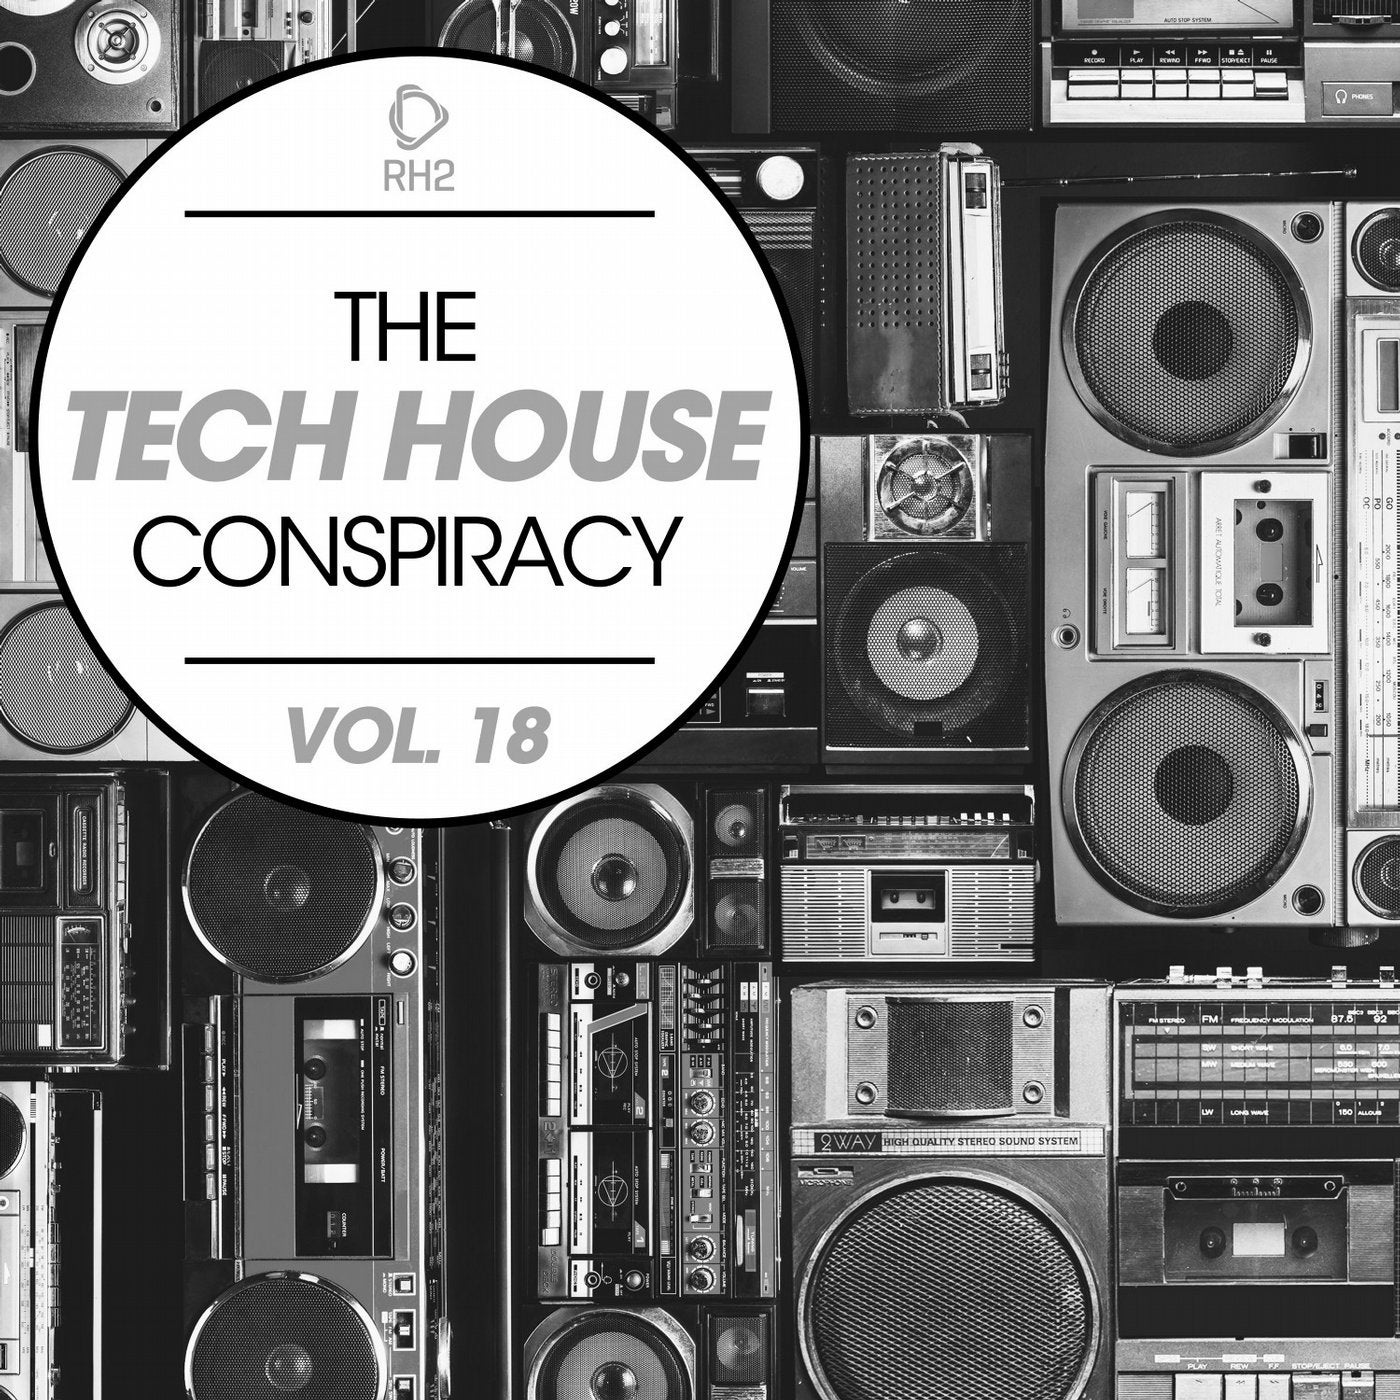 The Tech House Conspiracy Vol. 18